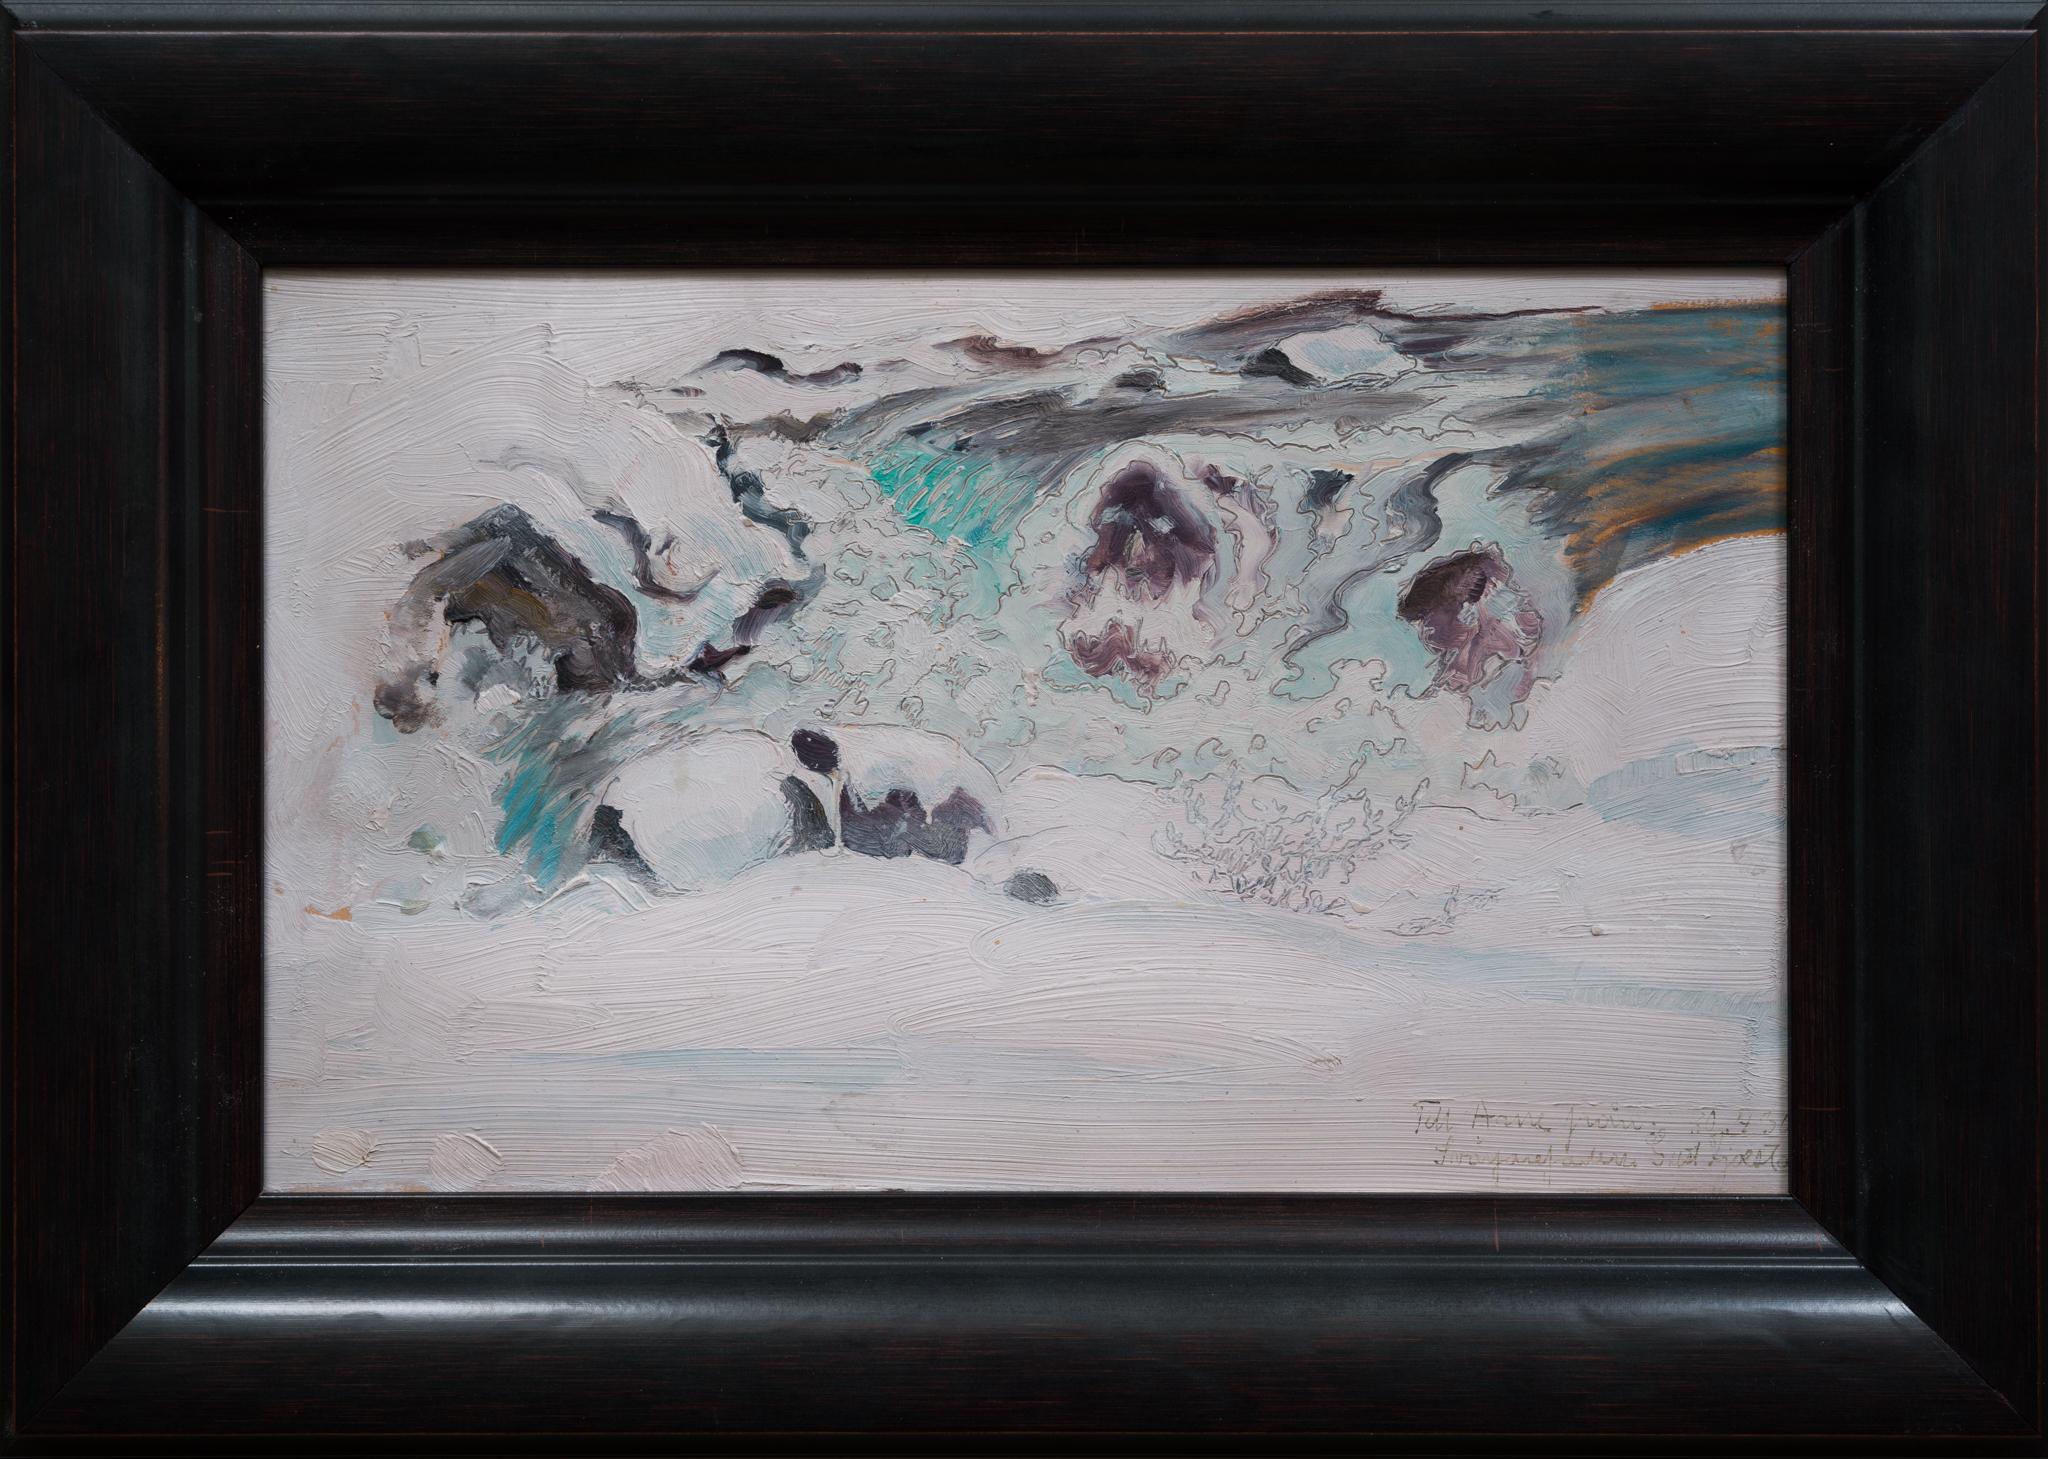 Gustaf Fjaestad Landscape Painting - Spring Flood, 1930 by Swedish Racken Group Artist Gustaf Fjæstad